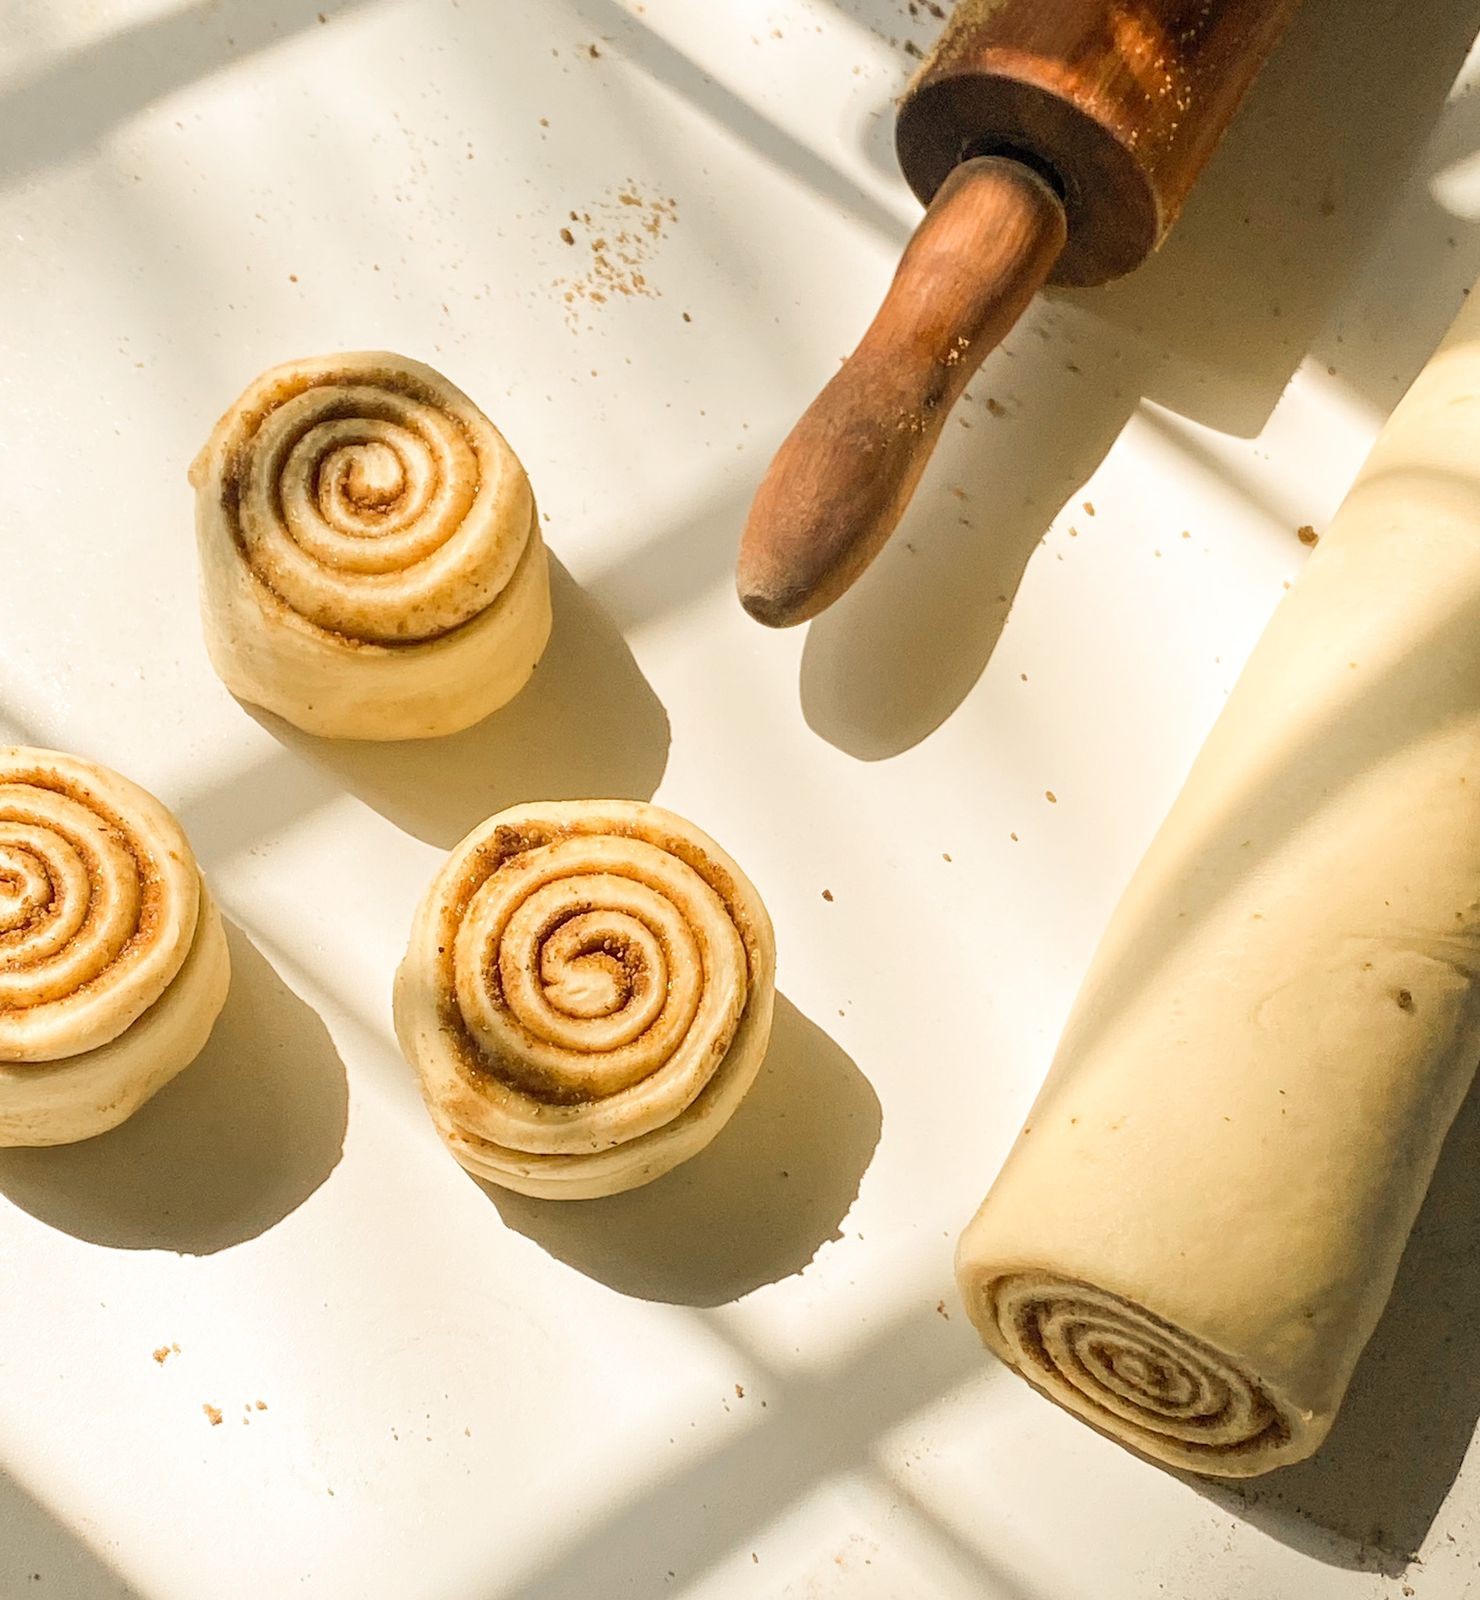 Os cinnamon rolls são feitos com massa tipo de brioche e canela em pó, com formato de espiral (Foto: Divulgação)